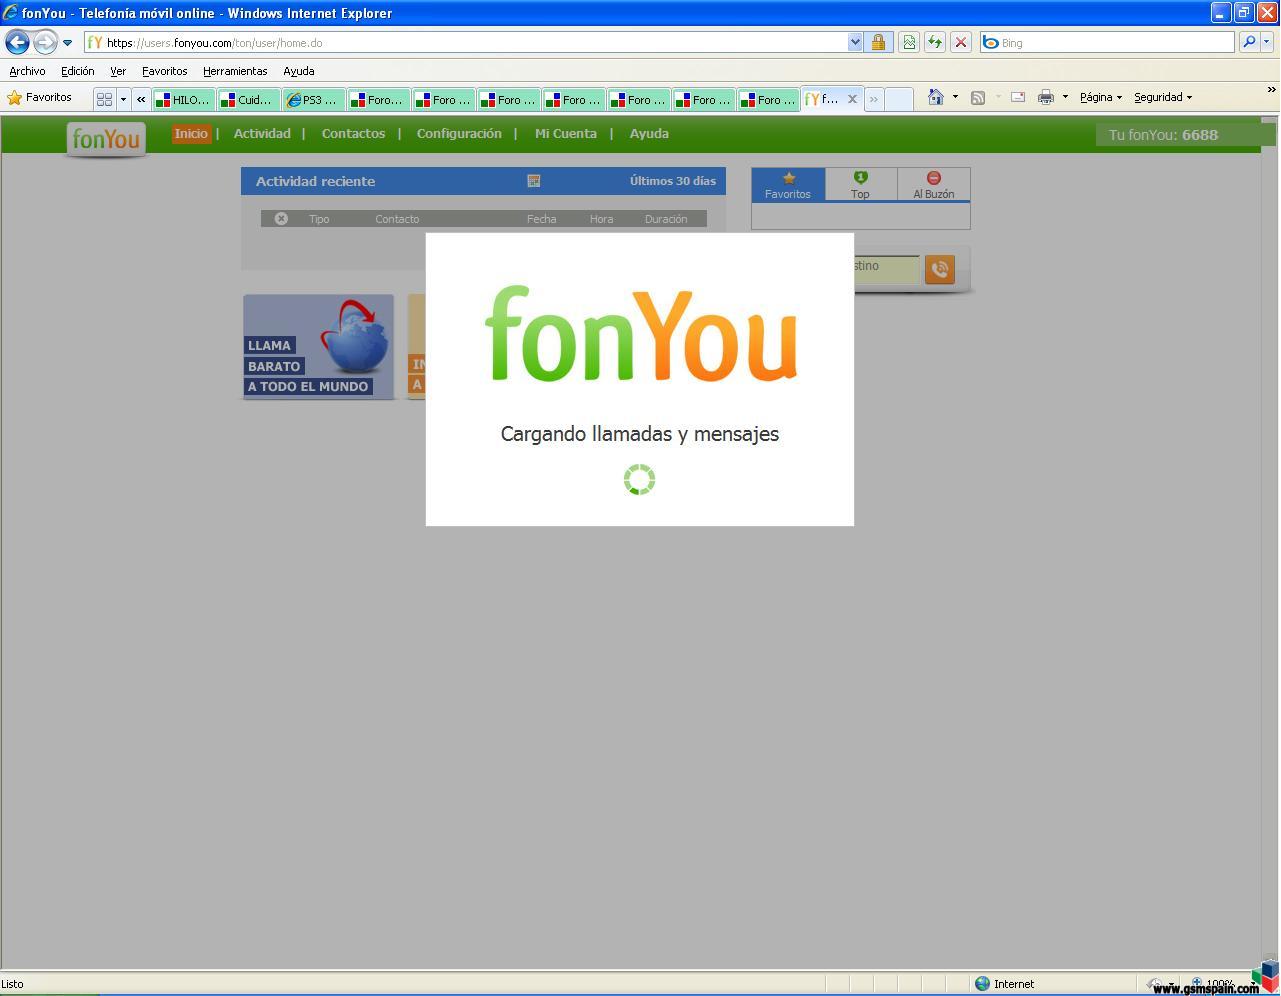 os funciona la web de FONYOU ???